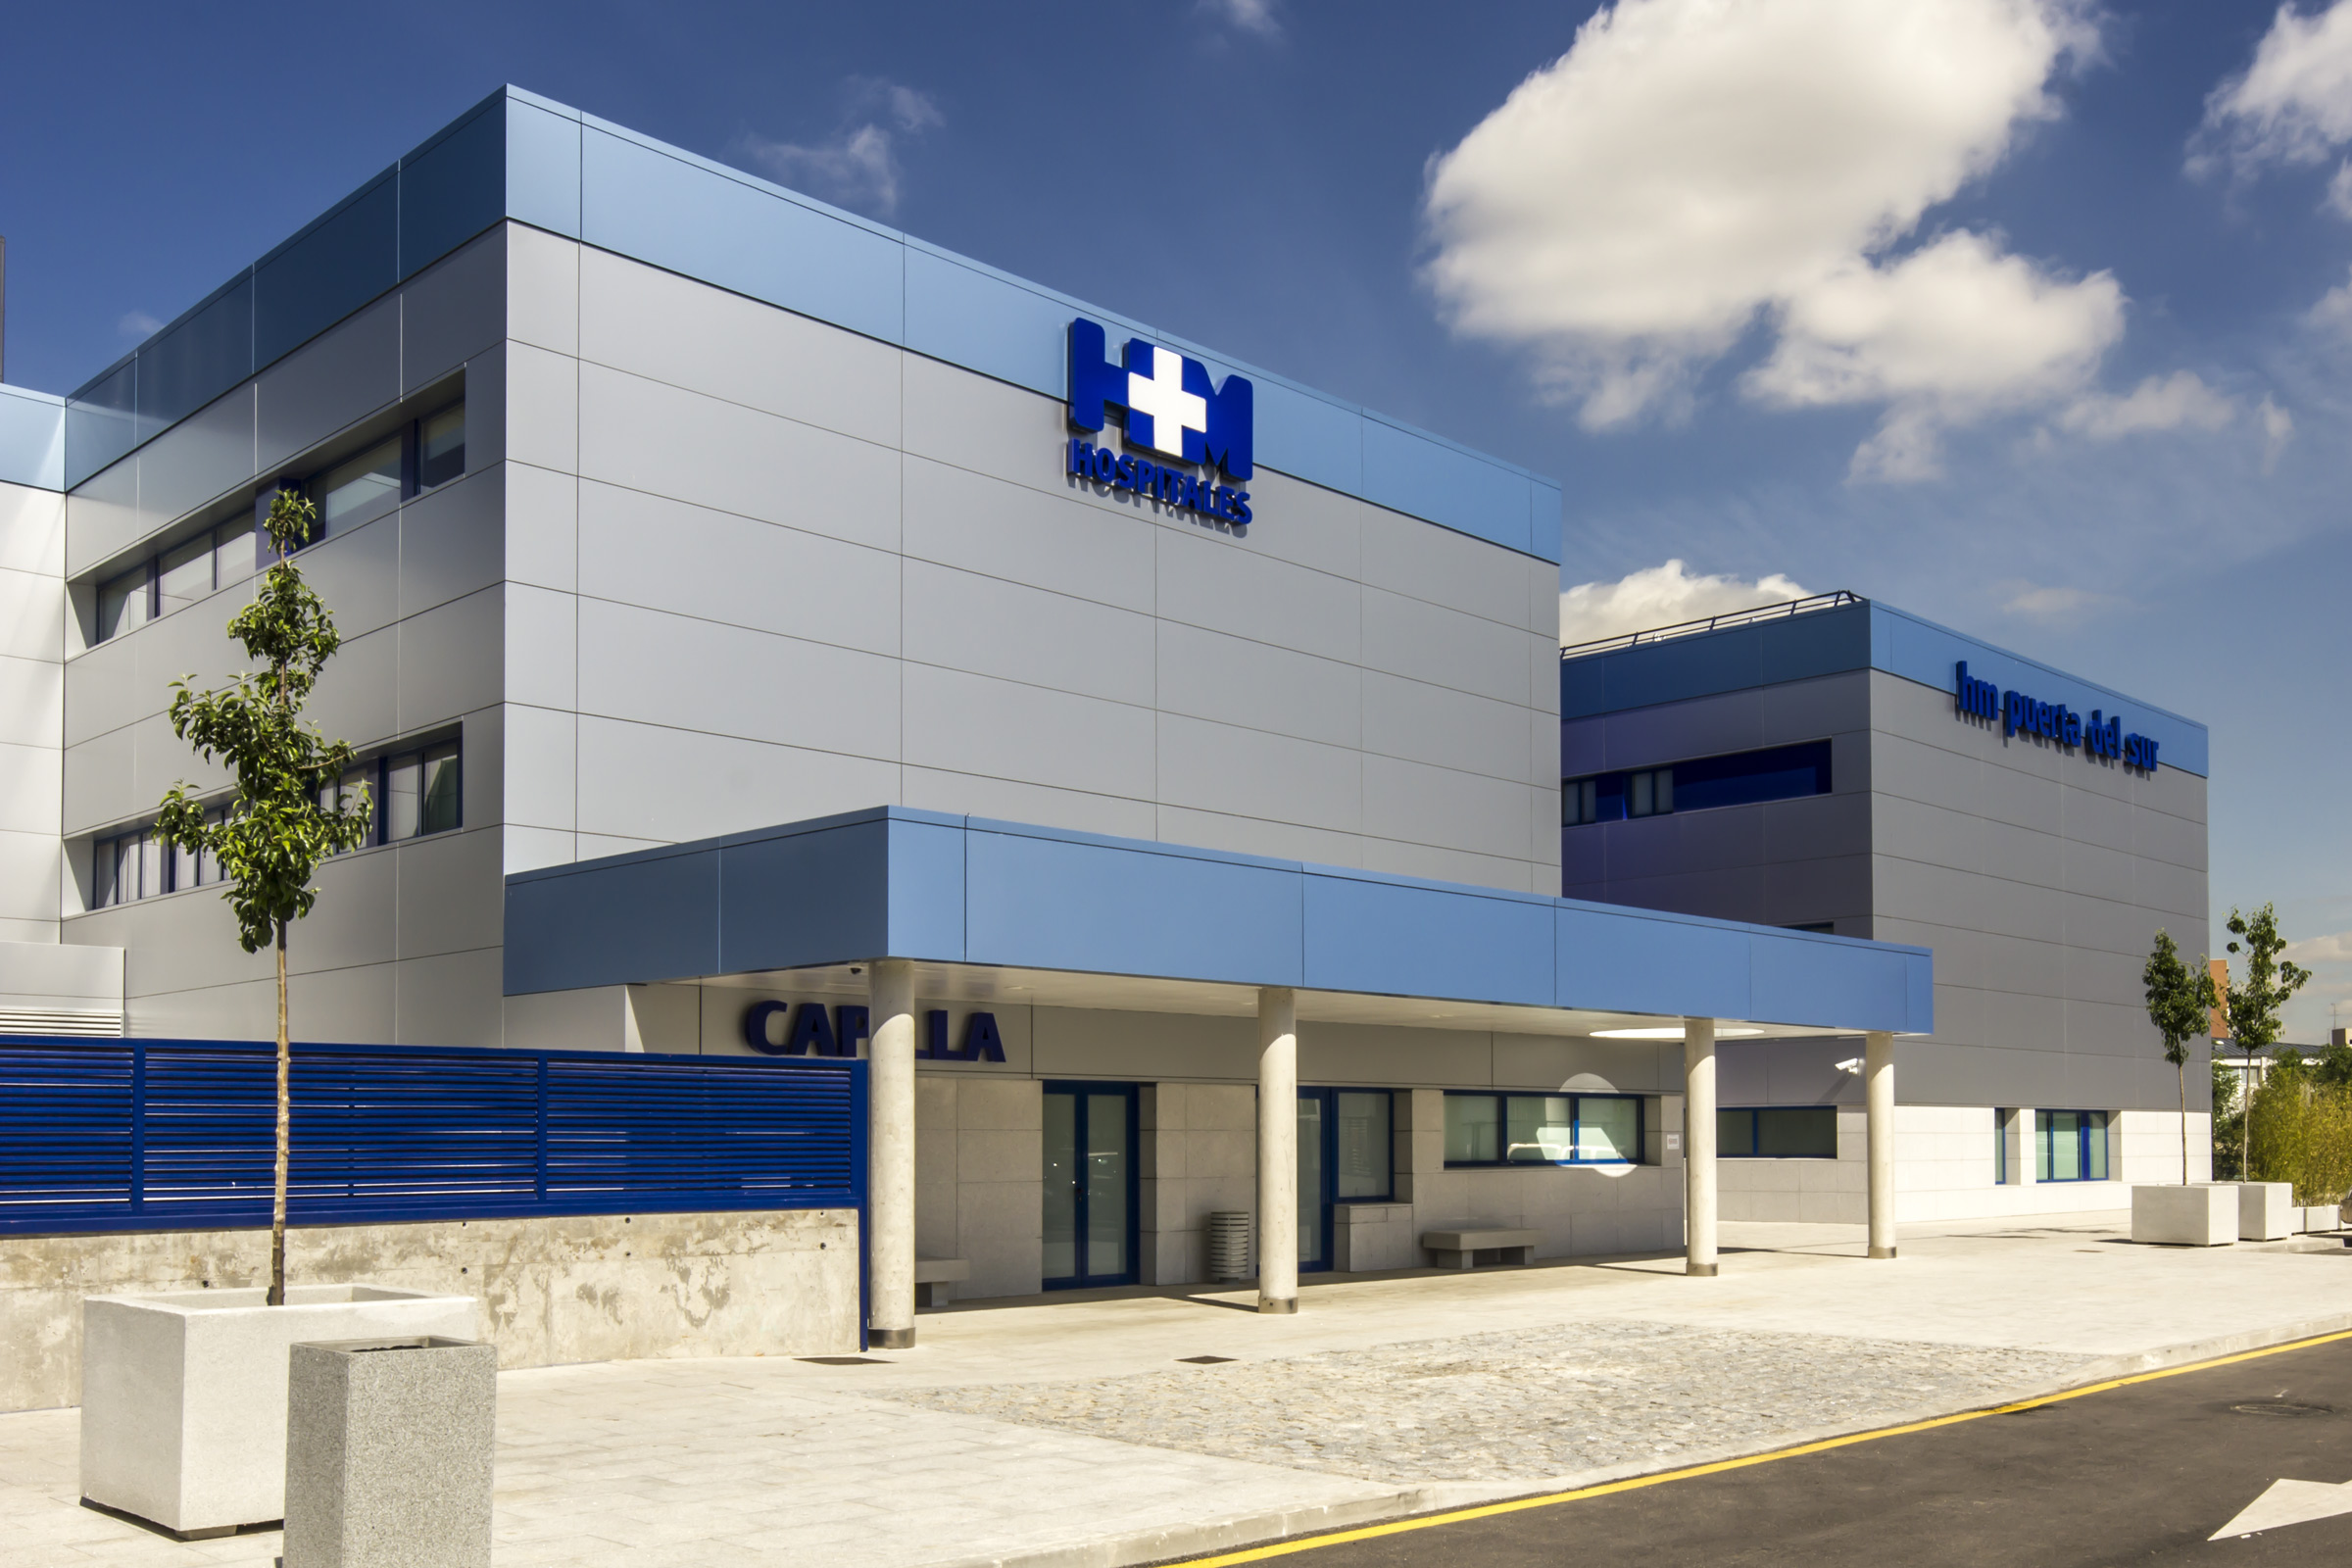 hm-puerta-del-sur-hospital-STB-409